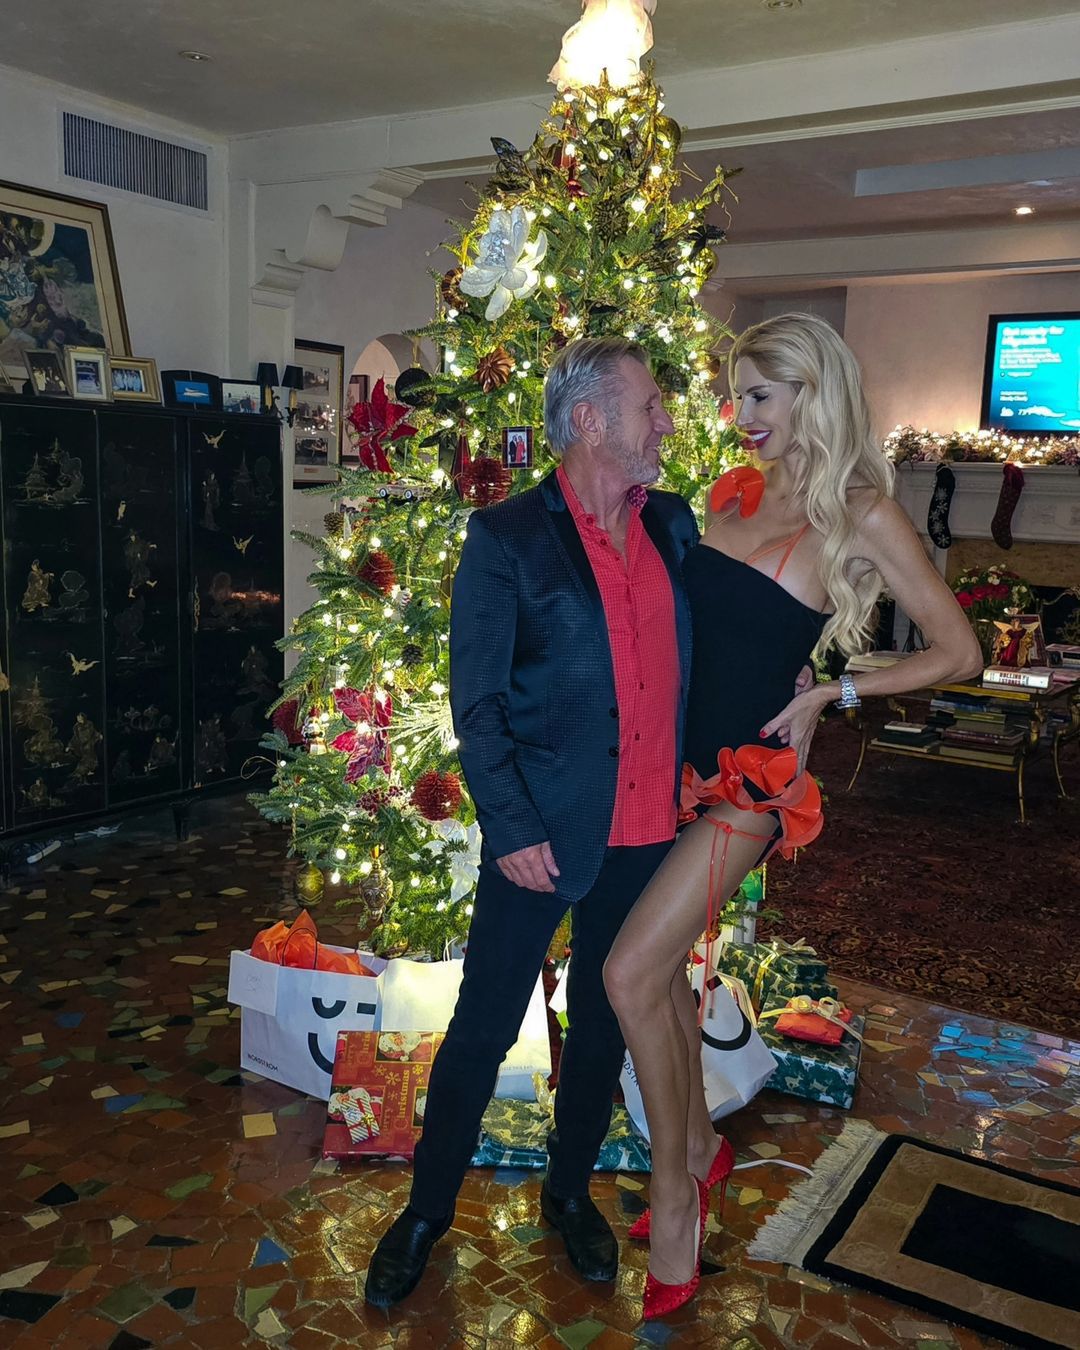 Aneta Glam pochwaliła się świątecznymi zdjęciami (fot. Instagram)